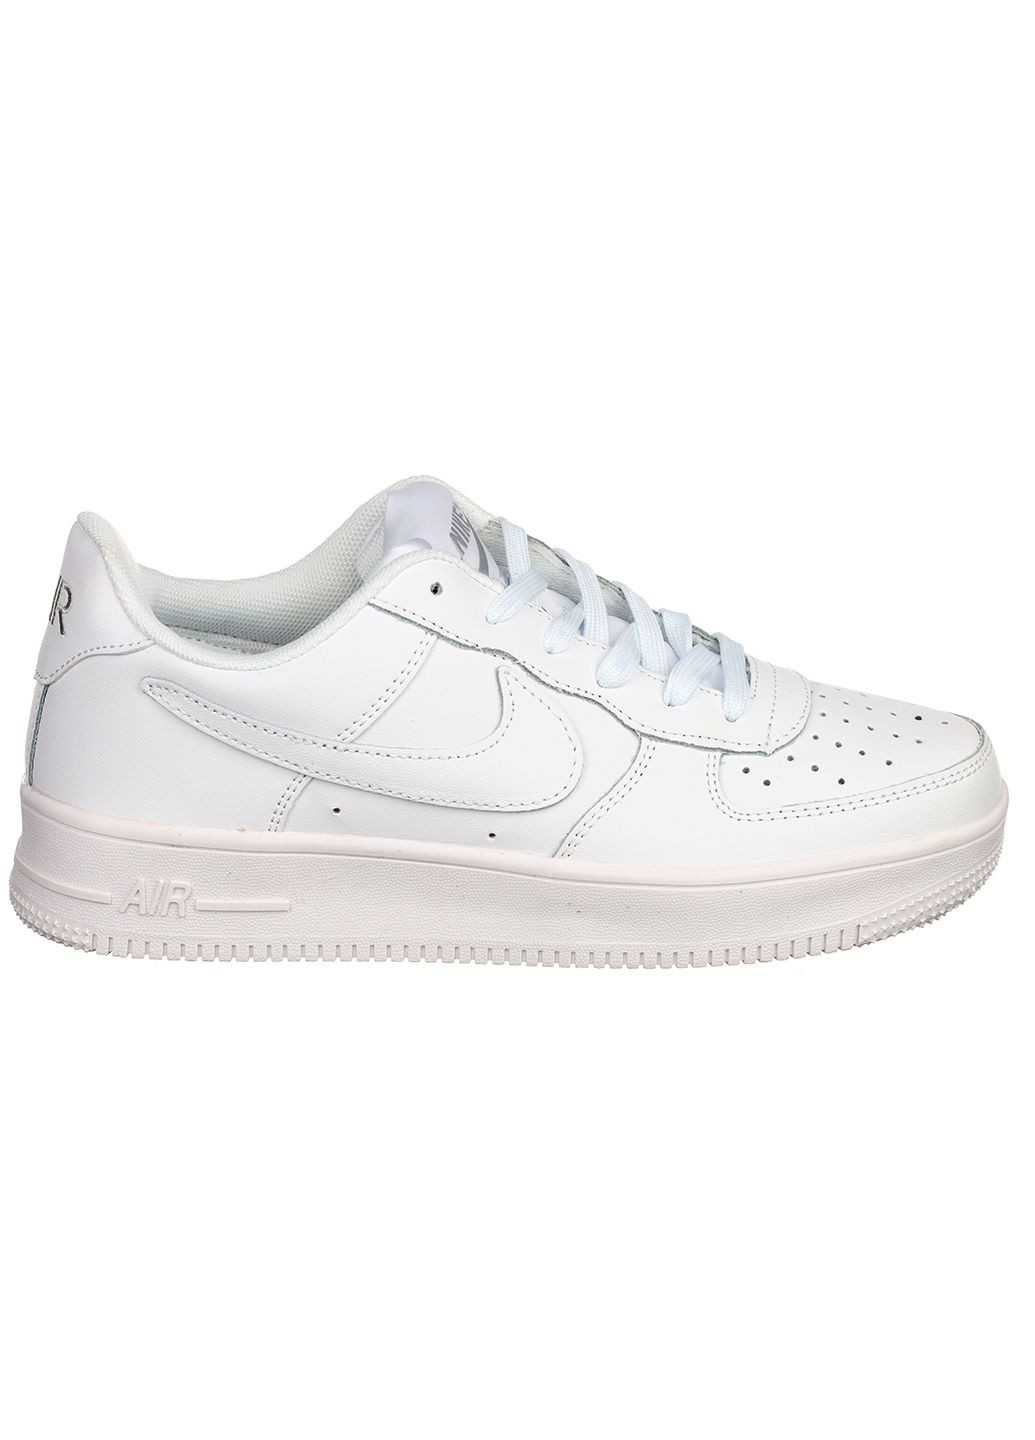 Белые демисезонные женские кроссовки из кожи g3450-1 Classica